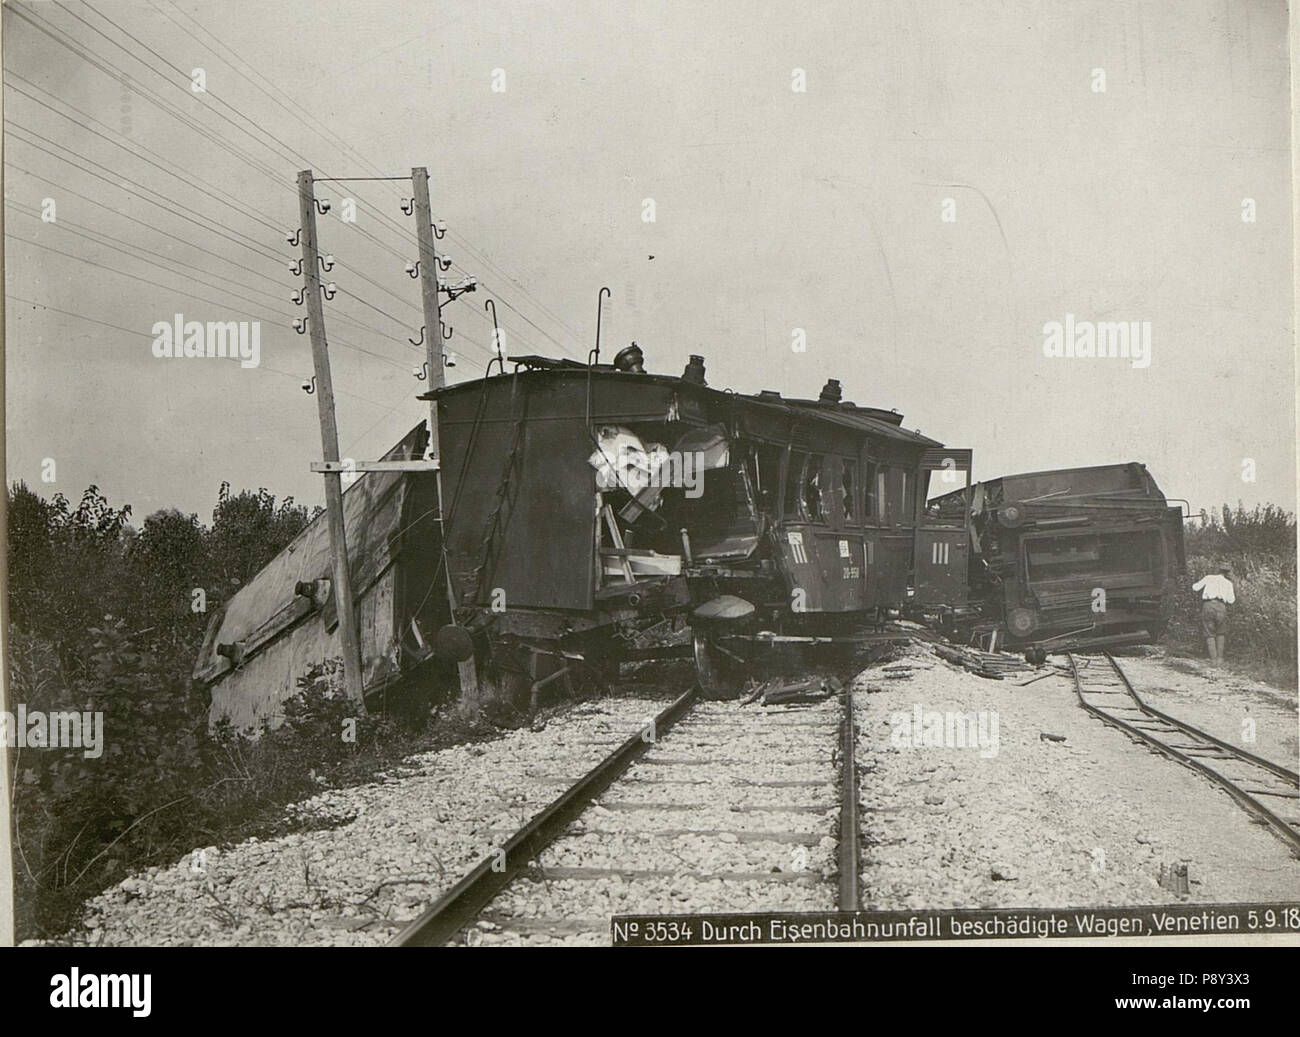 262 Durch Eisenbahnunfall beschädigte Wagen, Venetien (BildID 15624155) Stock Photo